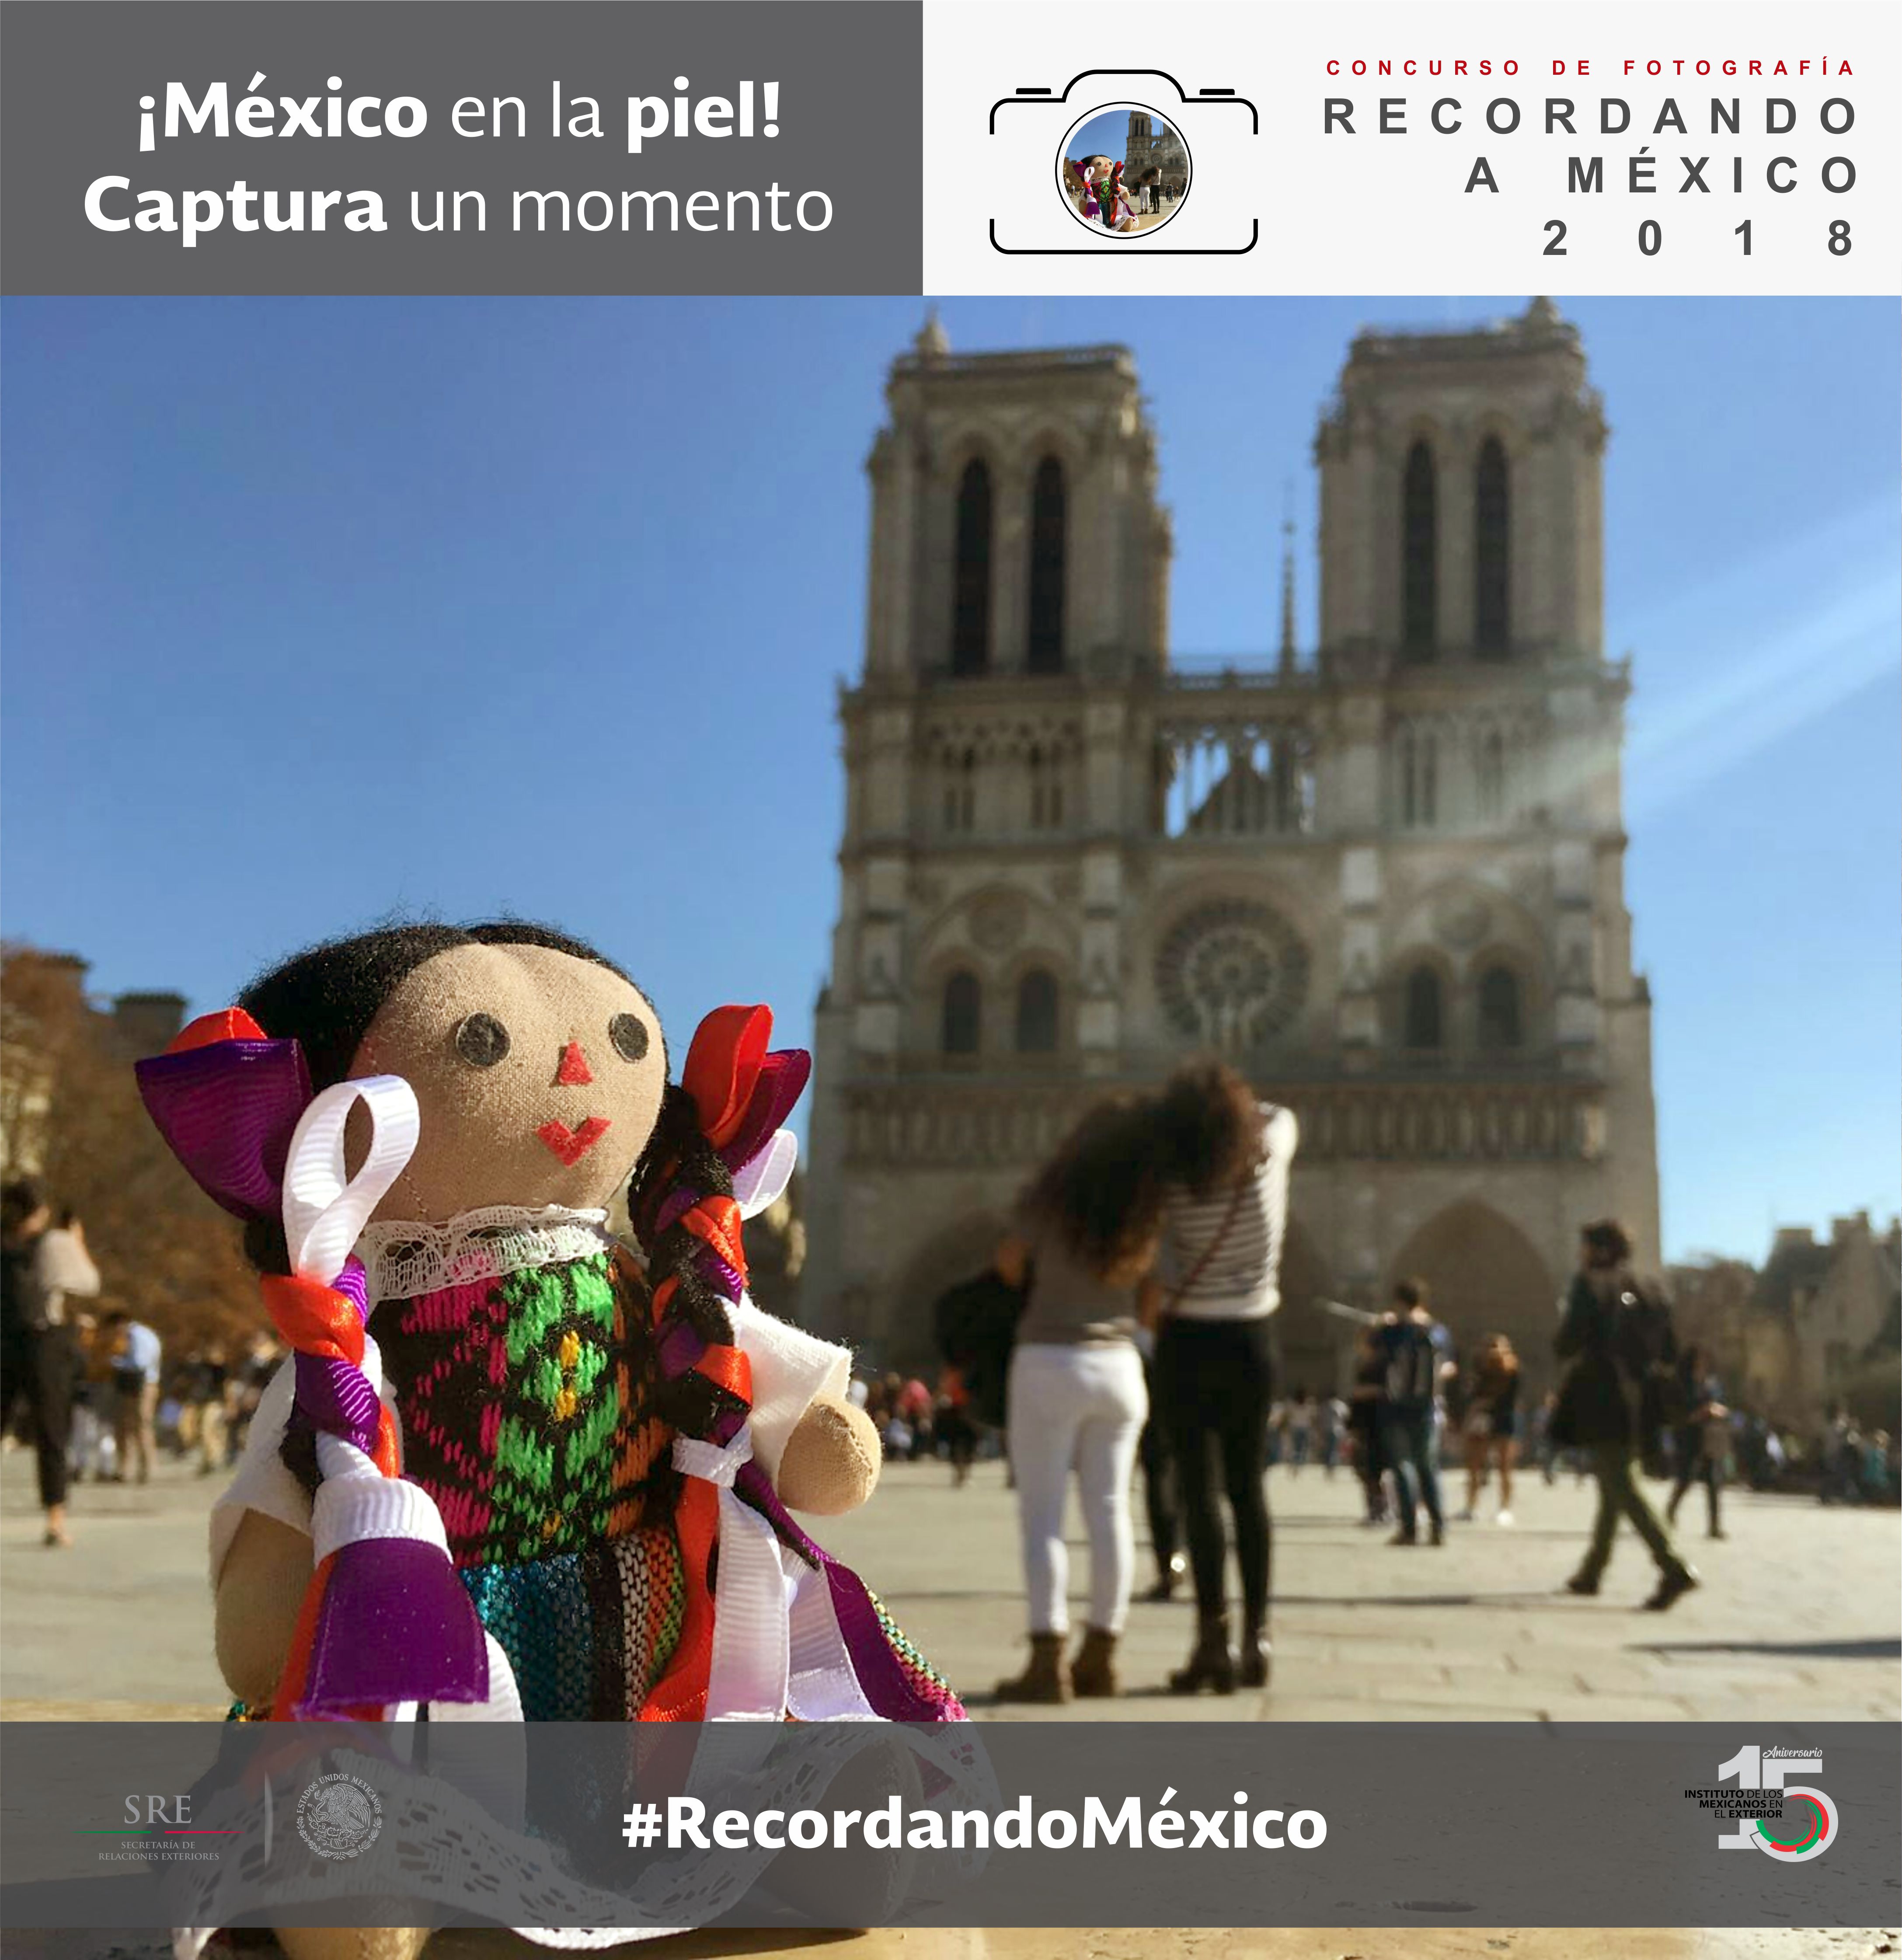 El IME informa que el 21 de septiembre del 2018 cerrará la 2da edición del Concurso de Fotografía “Recordando a México”, con el tema “Mi comunidad mexicana”.